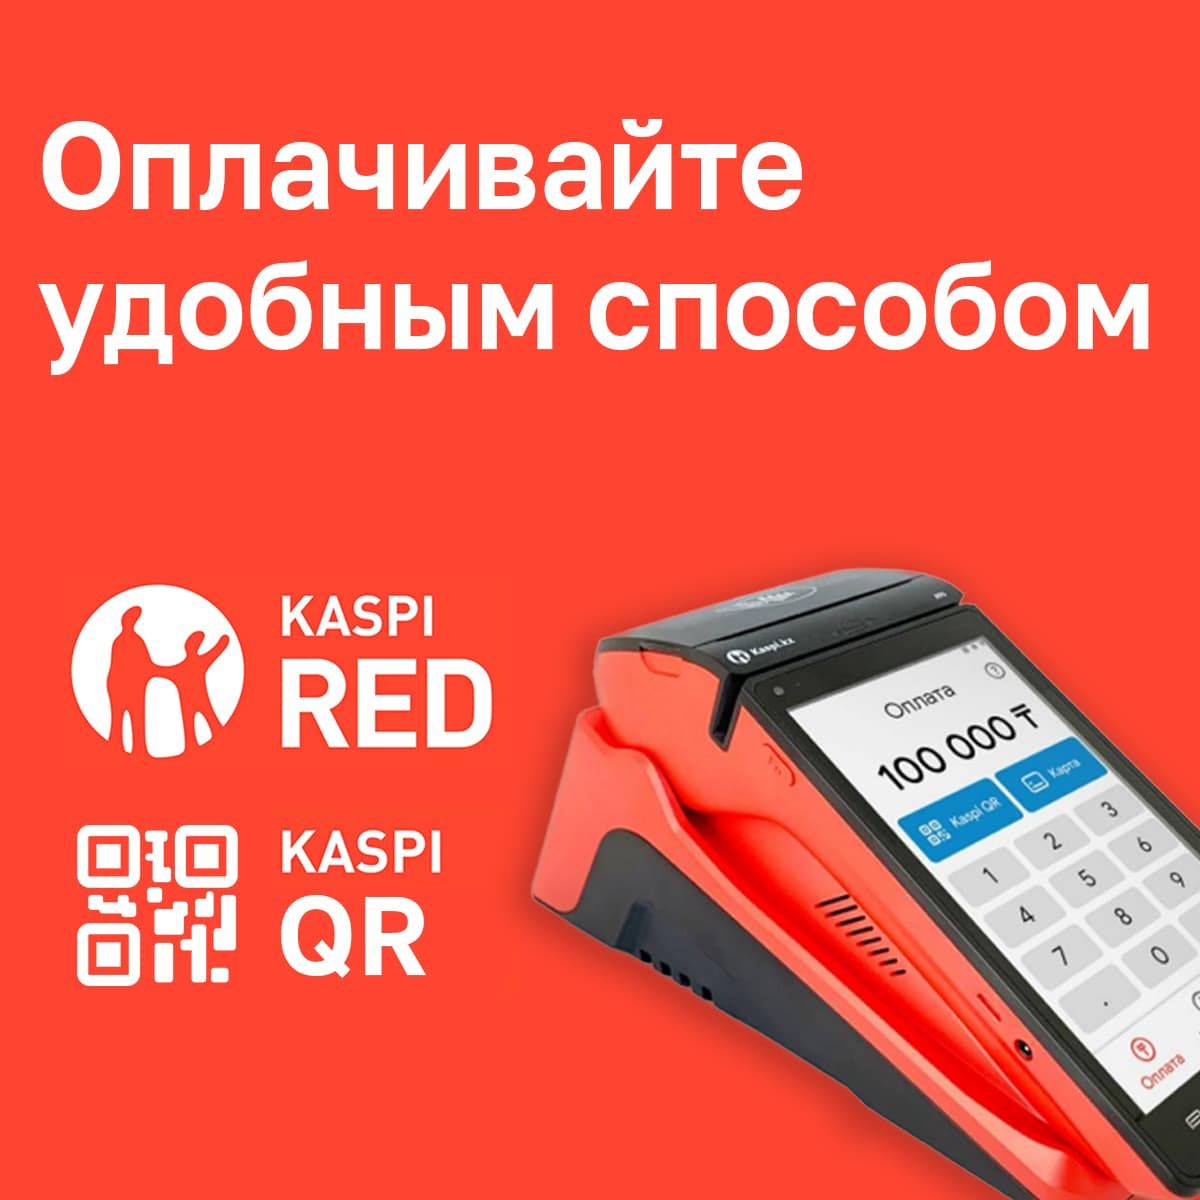 Совершайте покупки через Kaspi RED и QR